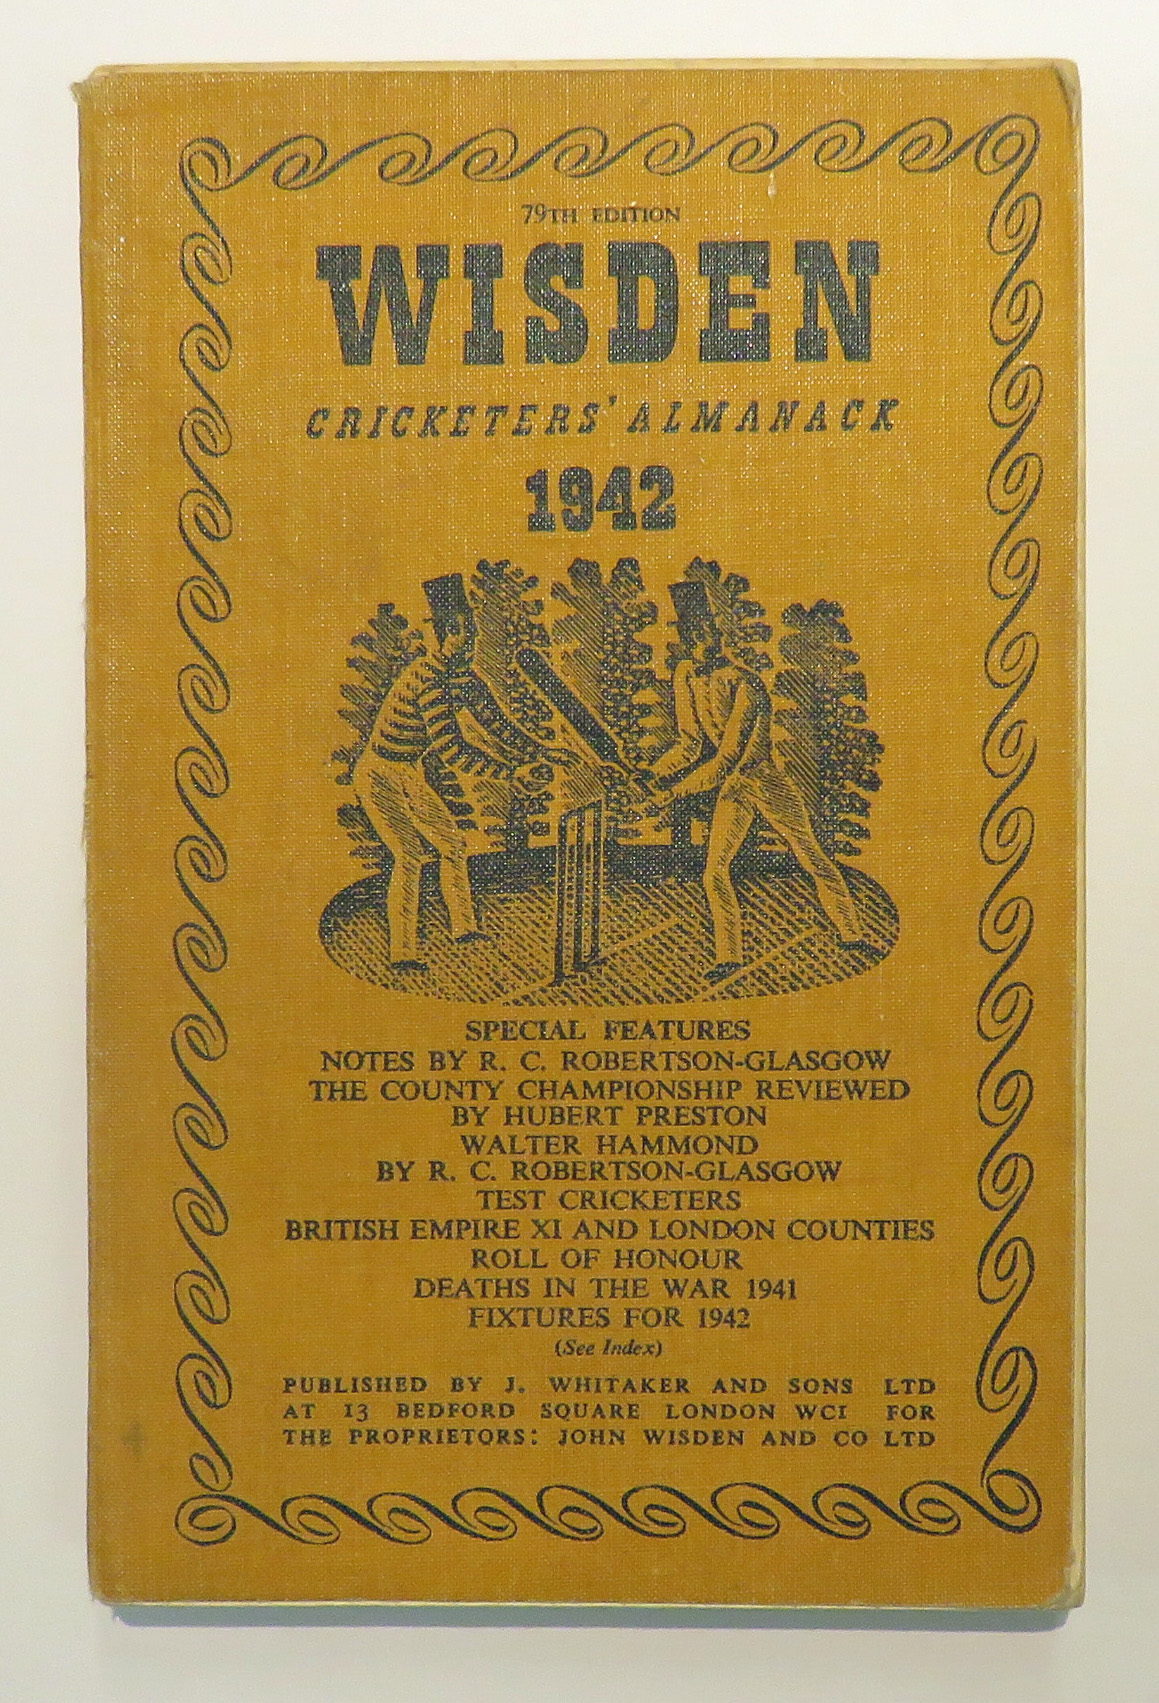 **Wisden's Cricketers' Almanack For 1942**